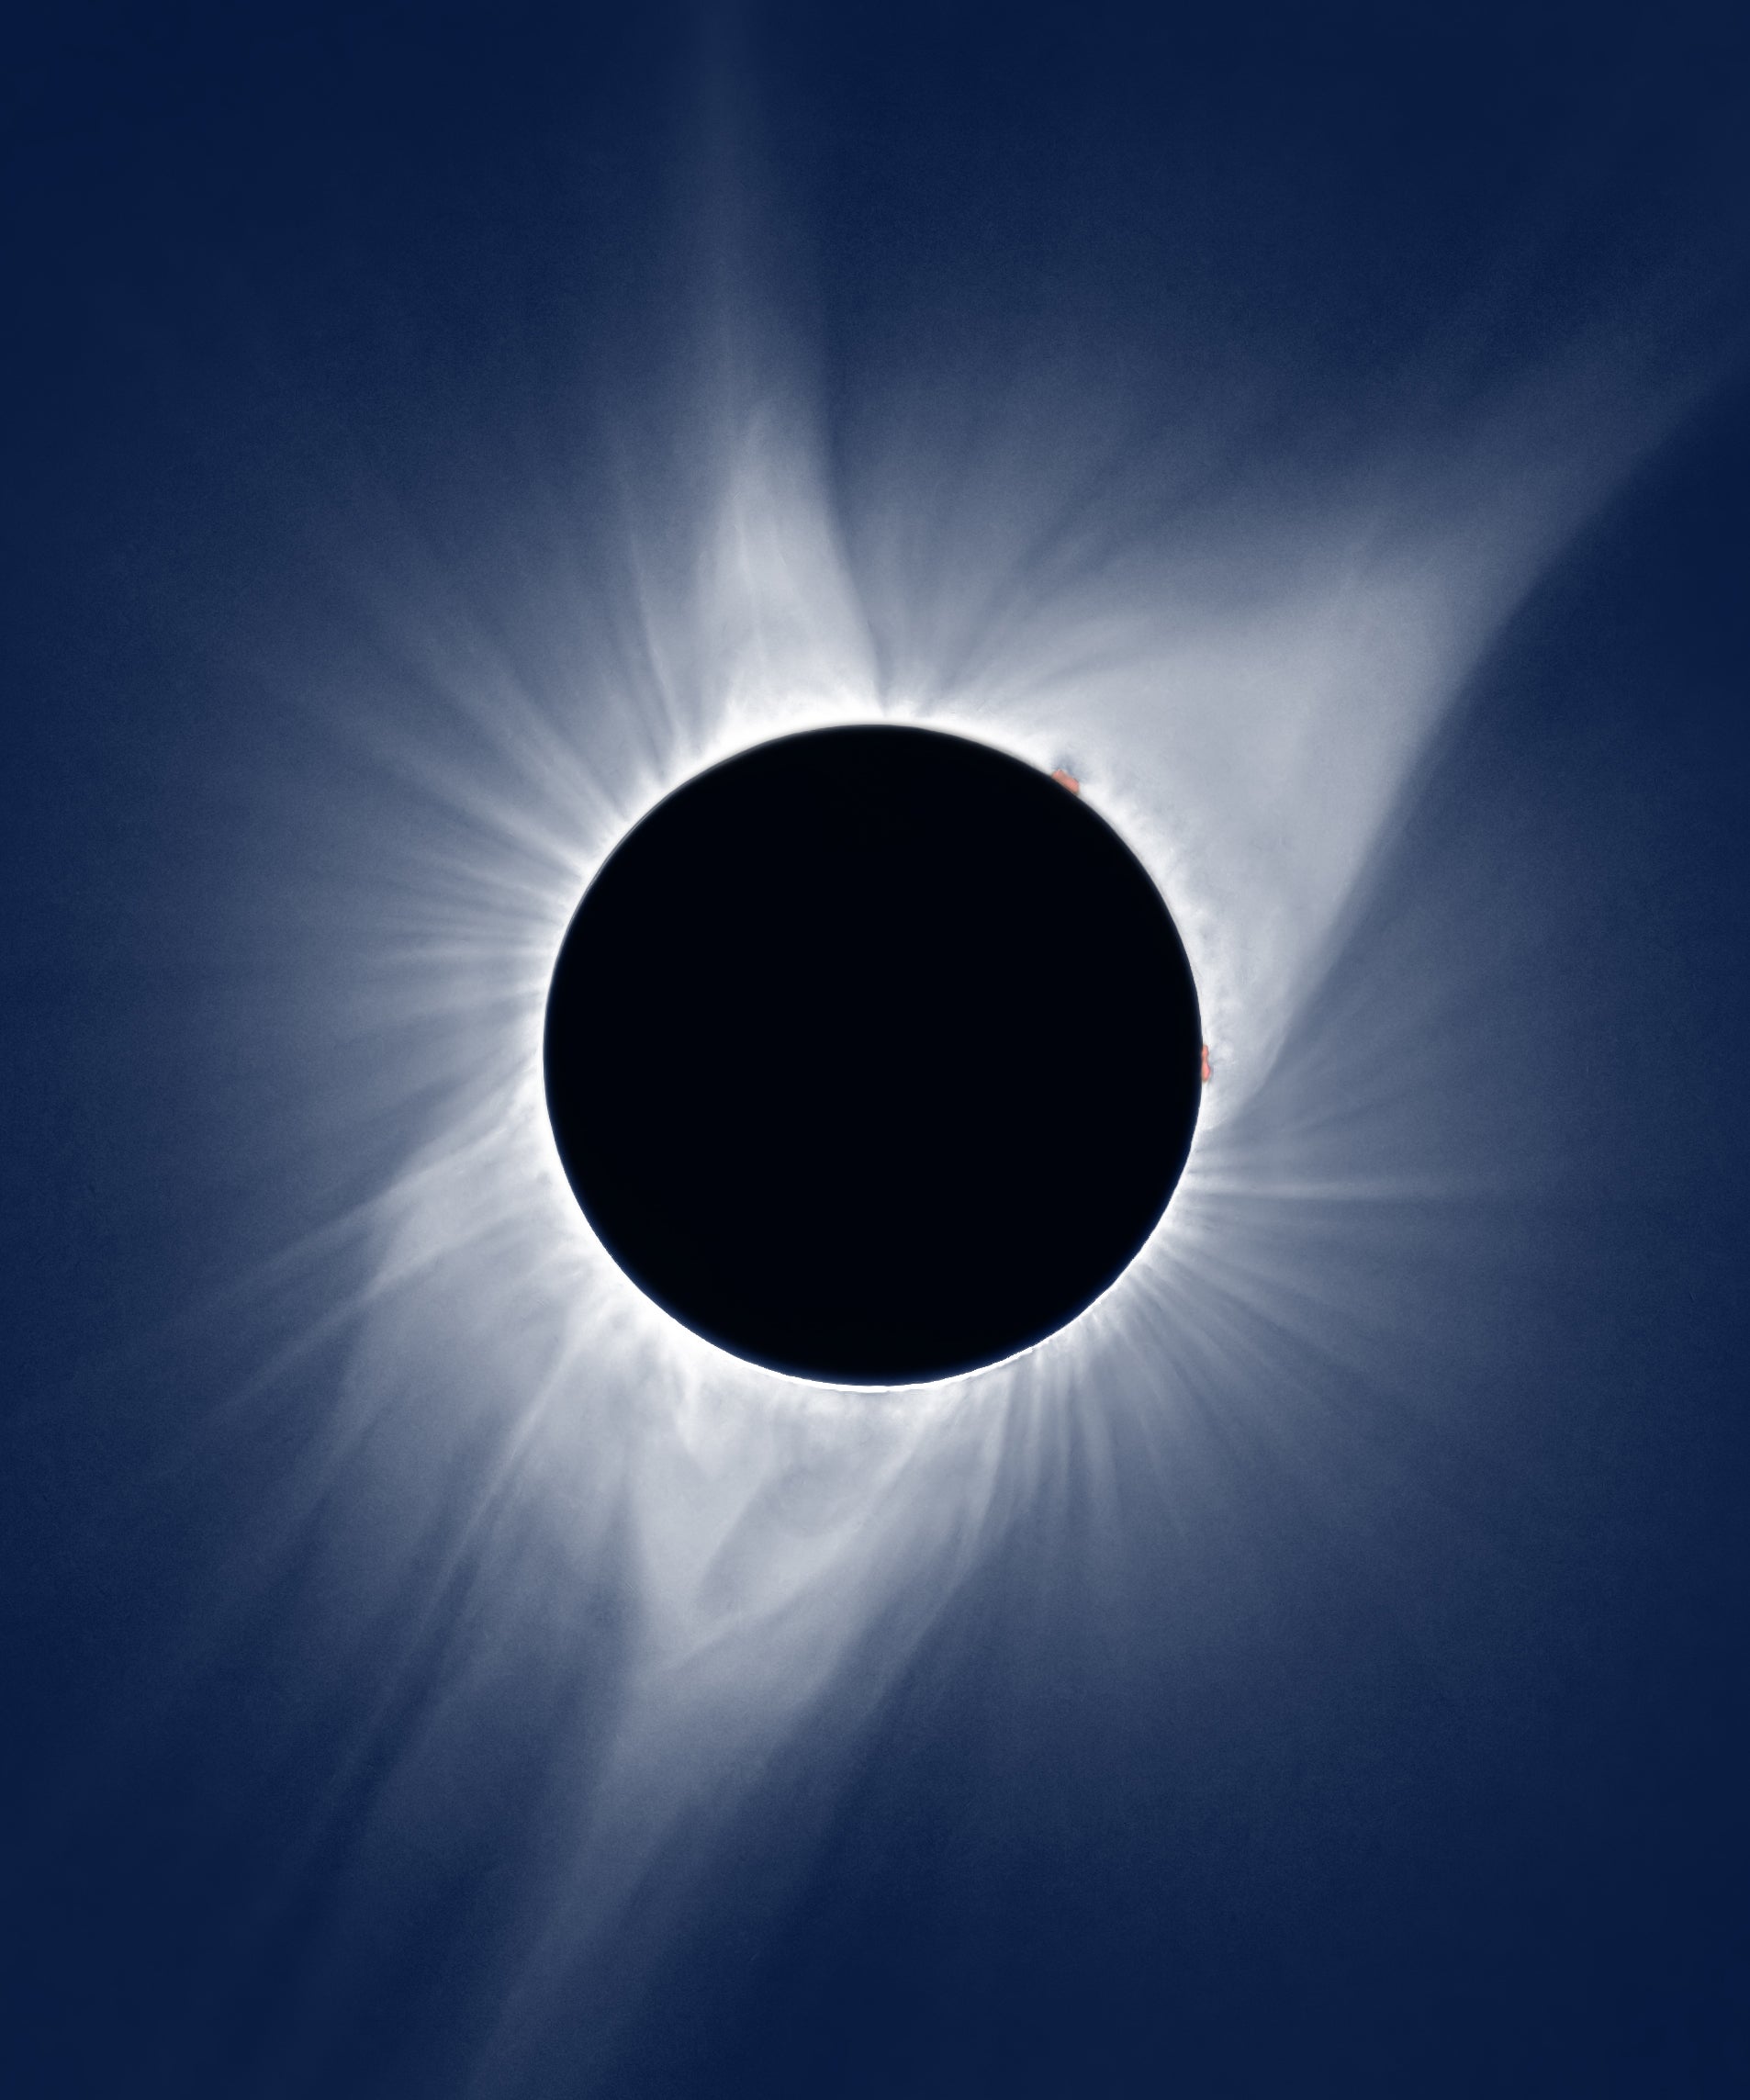 Eclipse solar Rare Black